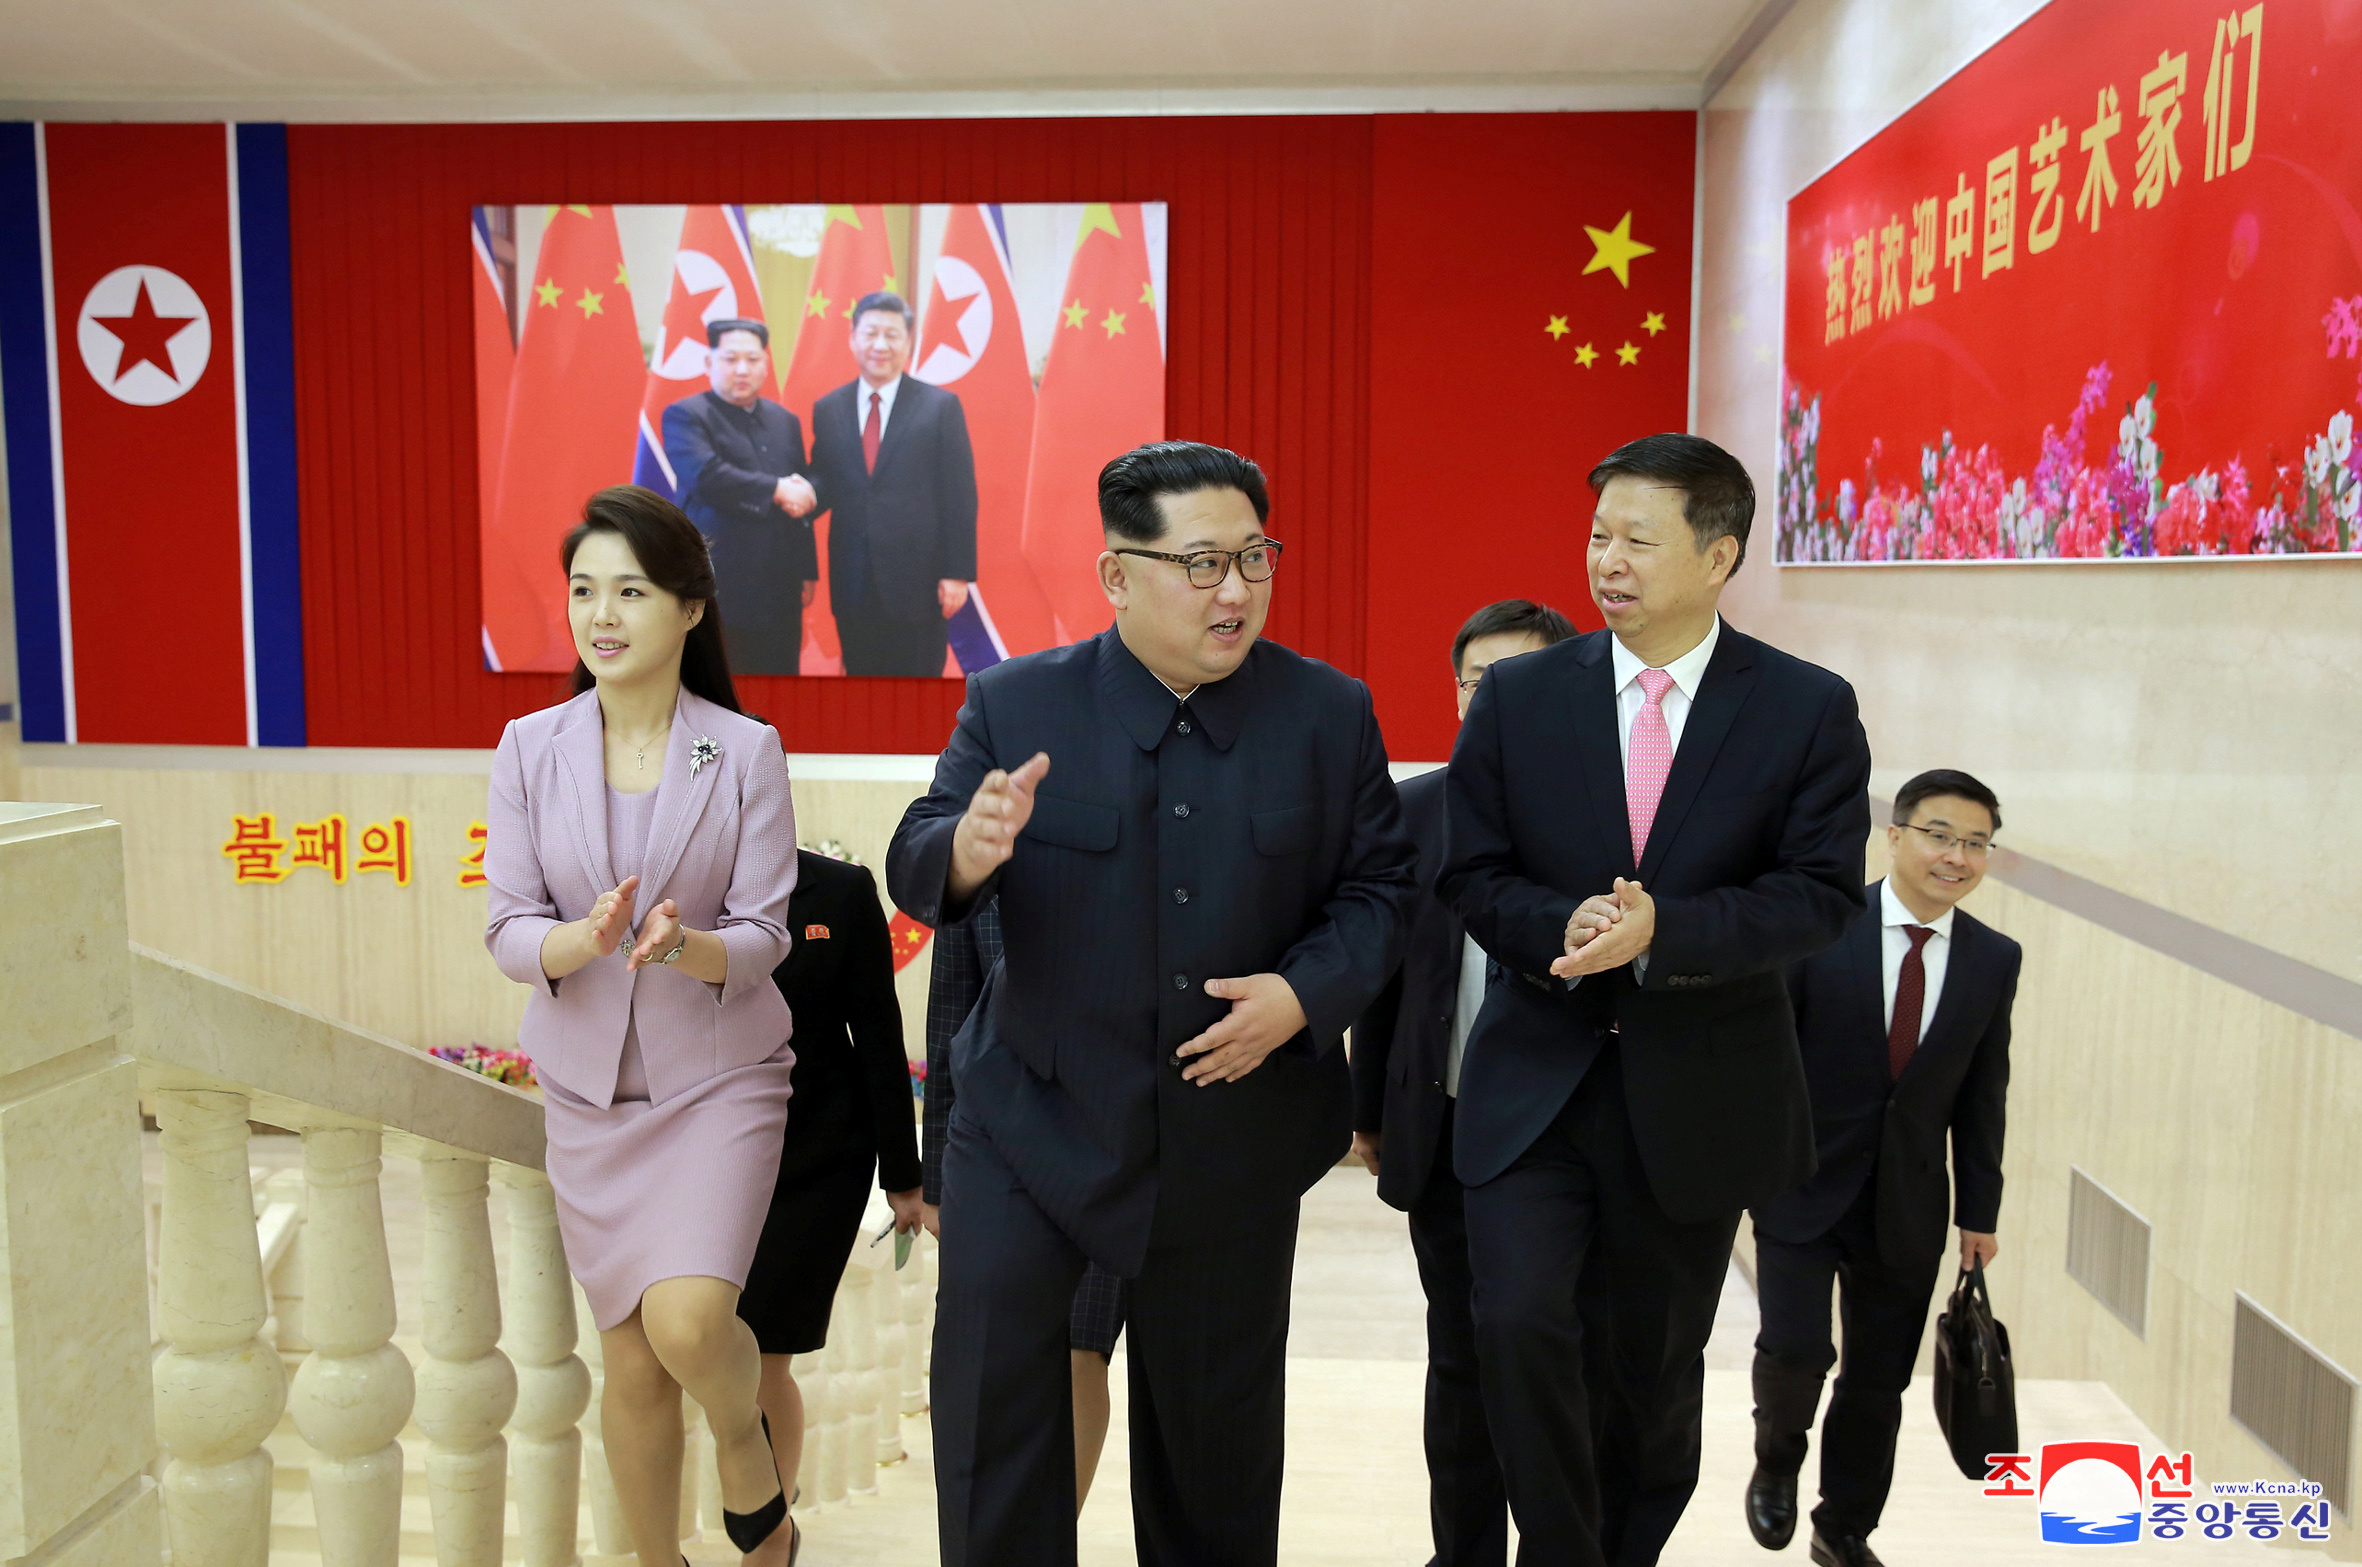 زعيم كوريا الشمالية يلتقى مسئول بالحزب الشيوعى الصينى